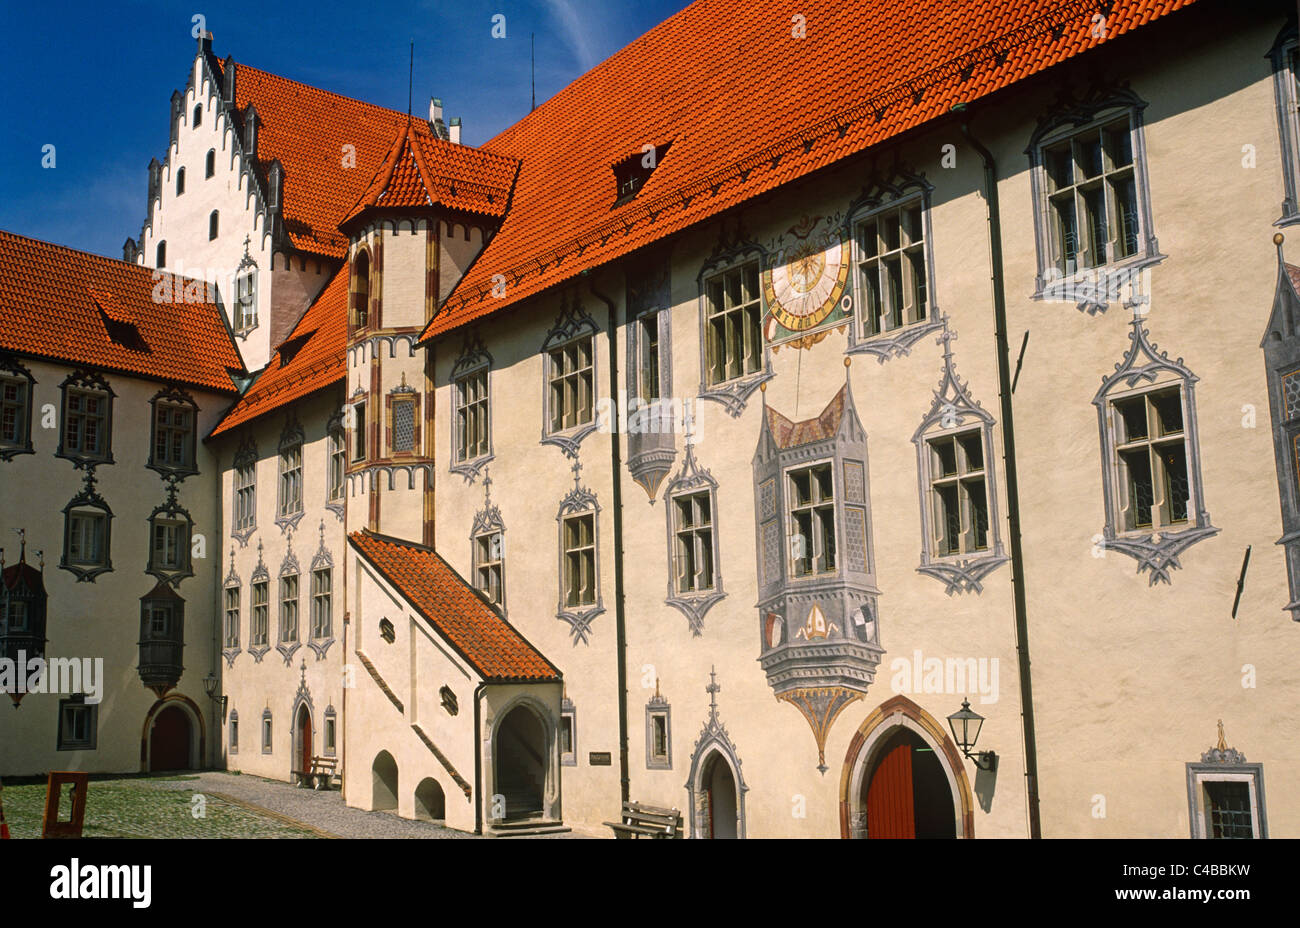 In Germania, in Baviera, Fussen. Trompe l'oeil esagera l'aspetto esterno di parti dell'Hohes Schloss, o alta, il castello di Fussen. In passato la residenza estiva dei principi vescovi di Augsburg e ora in parte utilizzato come una galleria d'arte, l'edificio è uno dei paesi più grandi e meglio conservati castelli tardogotici. Foto Stock